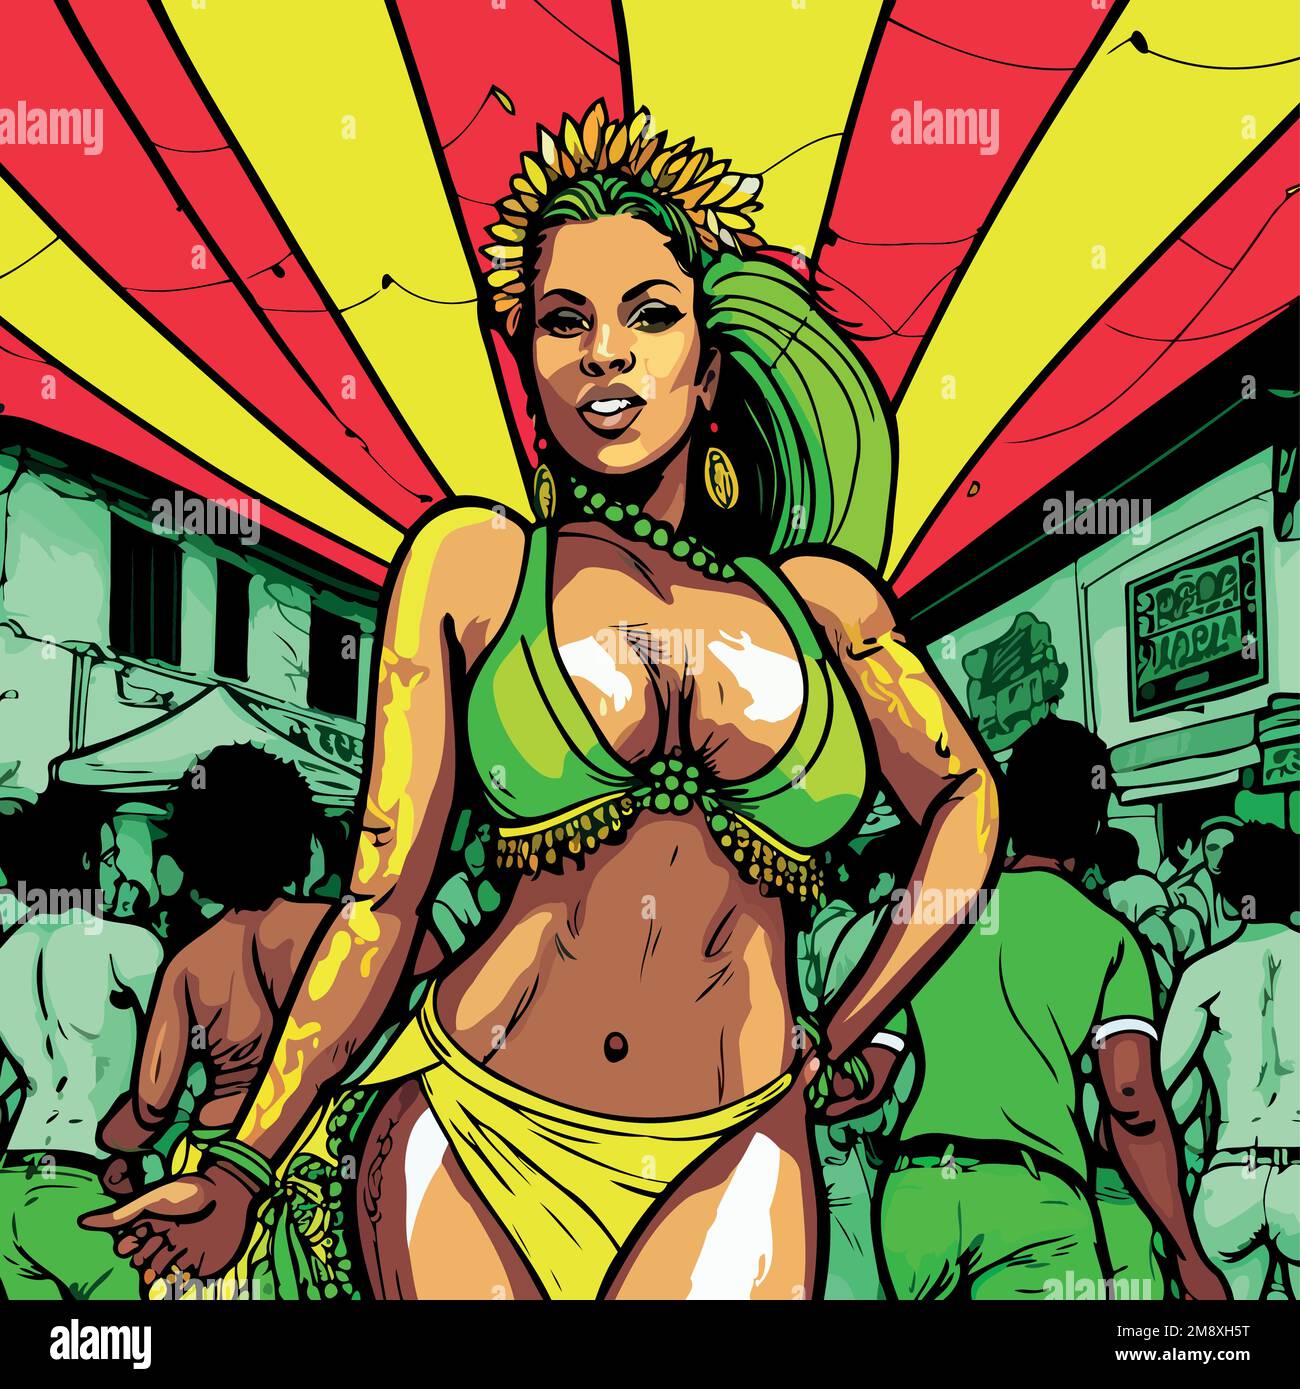 Illustration d'un personnage fictif costumé représentant une école de samba fictive au carnaval brésilien Illustration de Vecteur